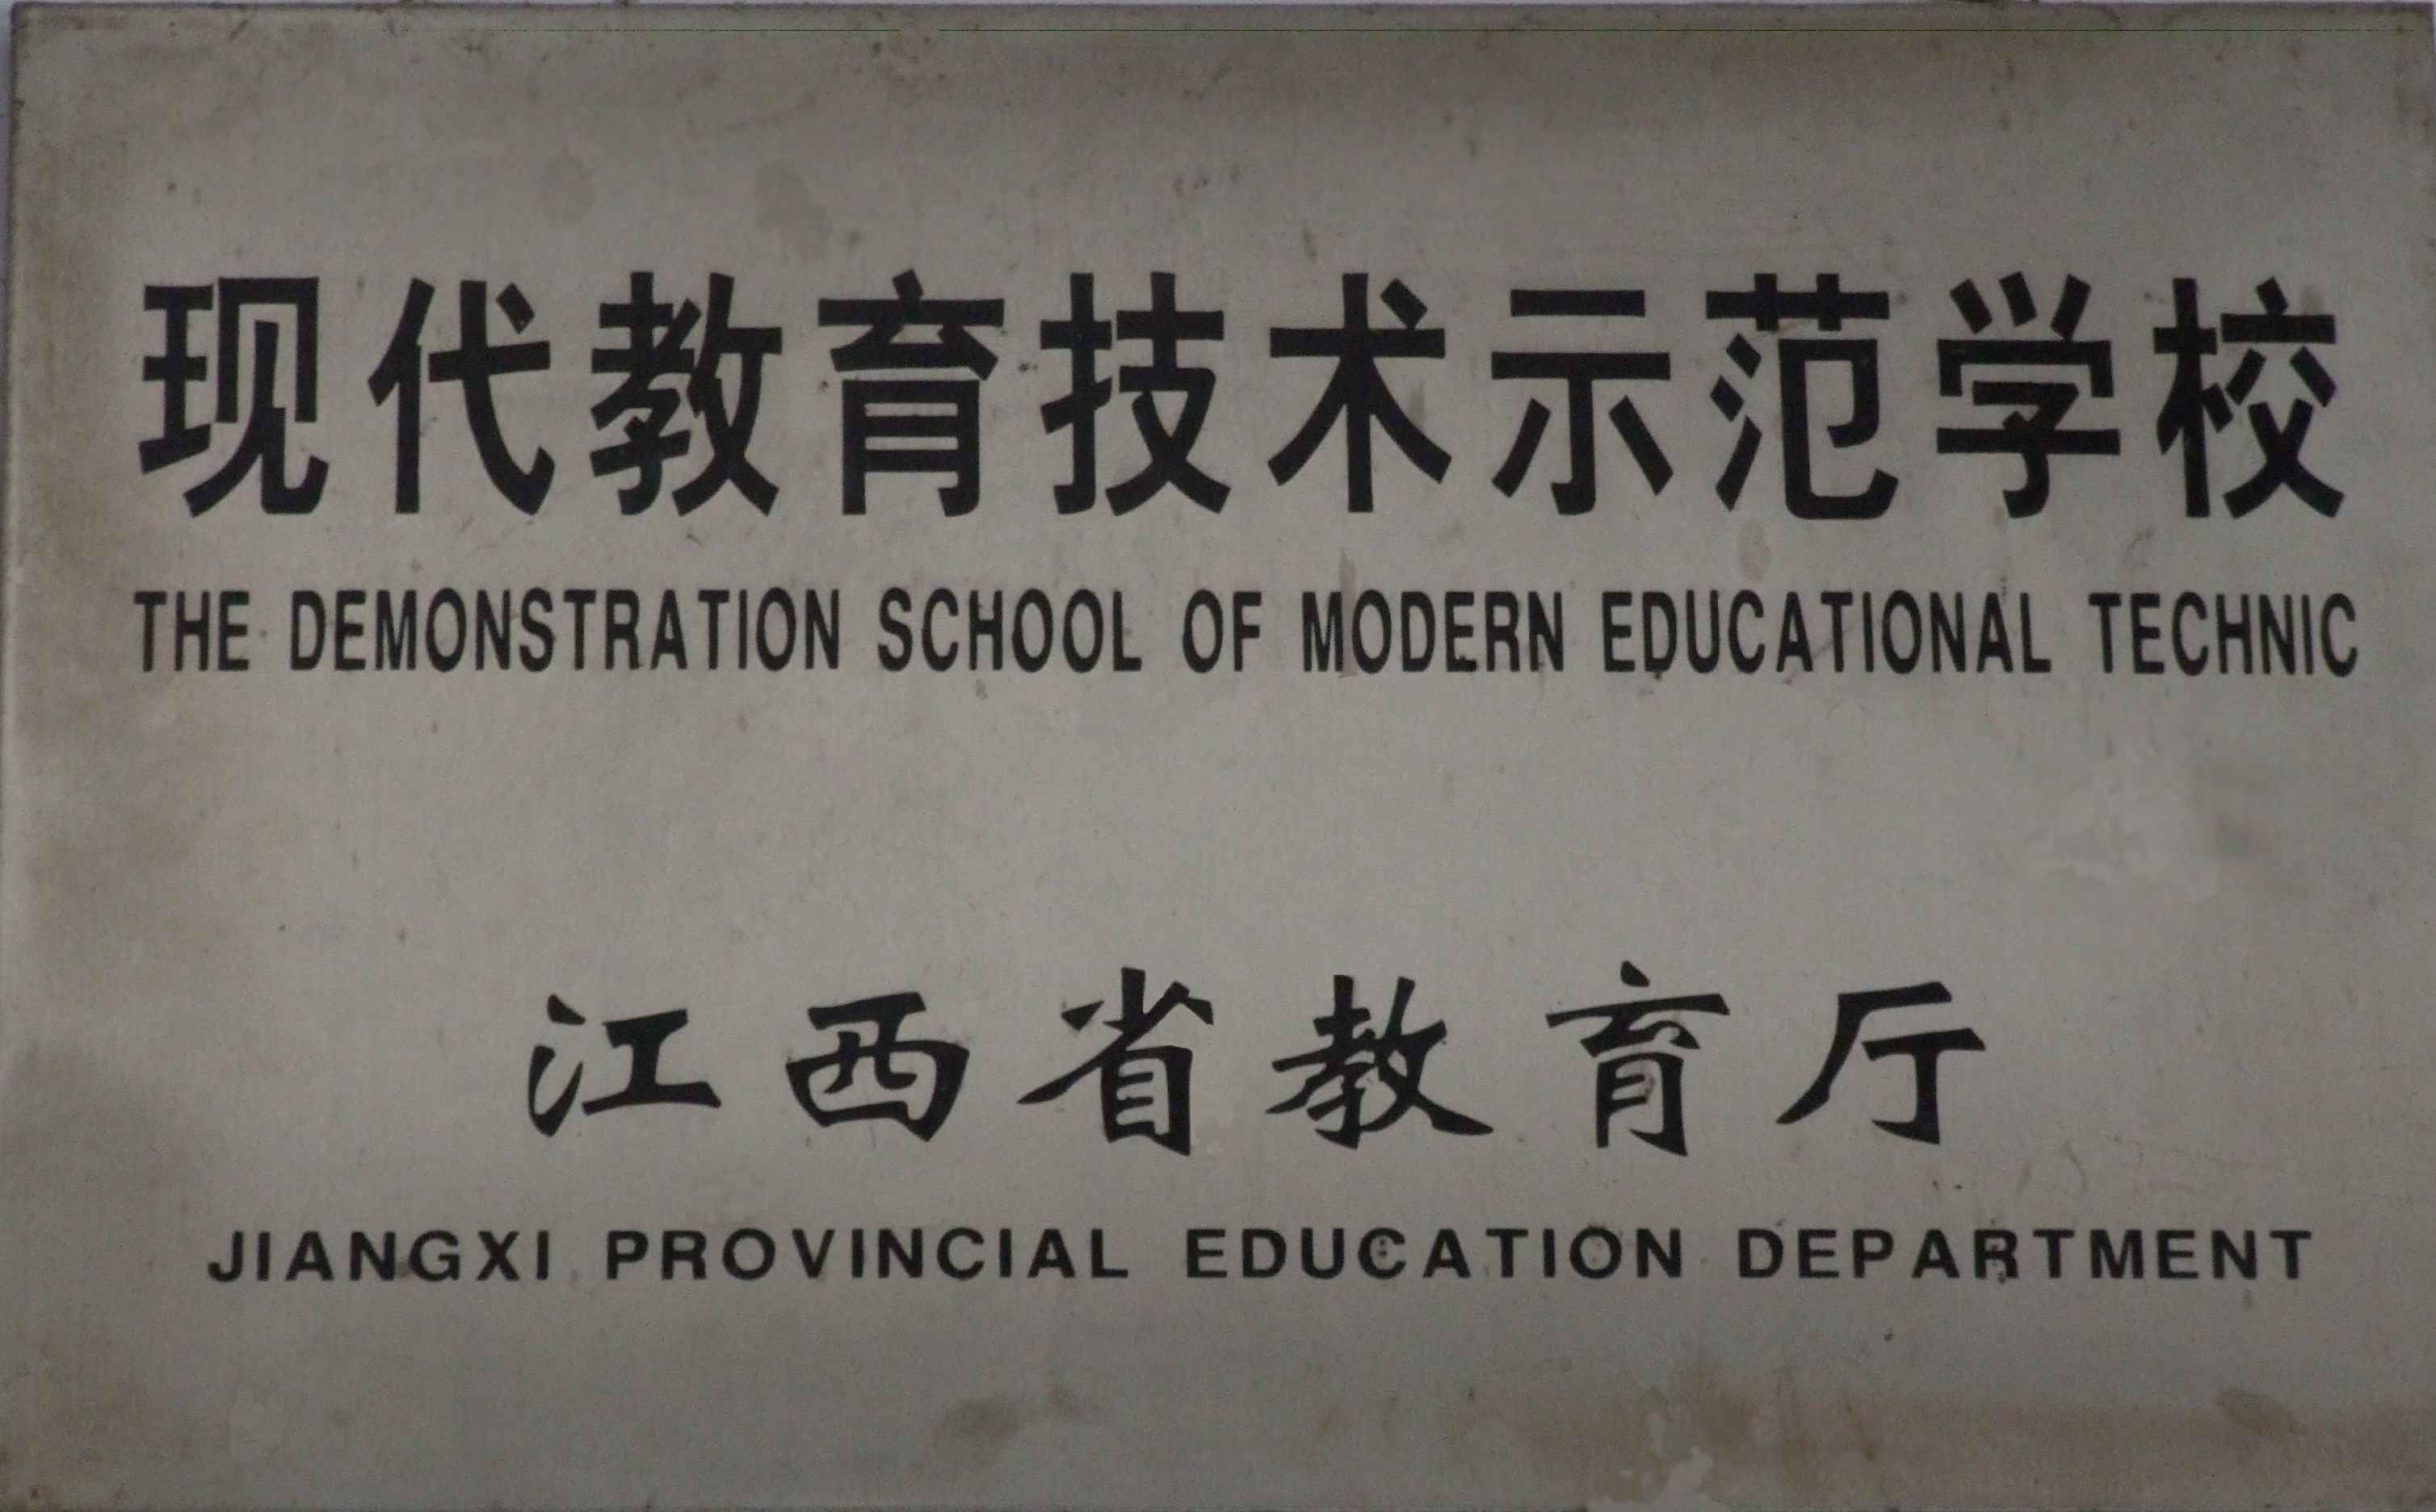 江西省教育廳頒發的牌匾